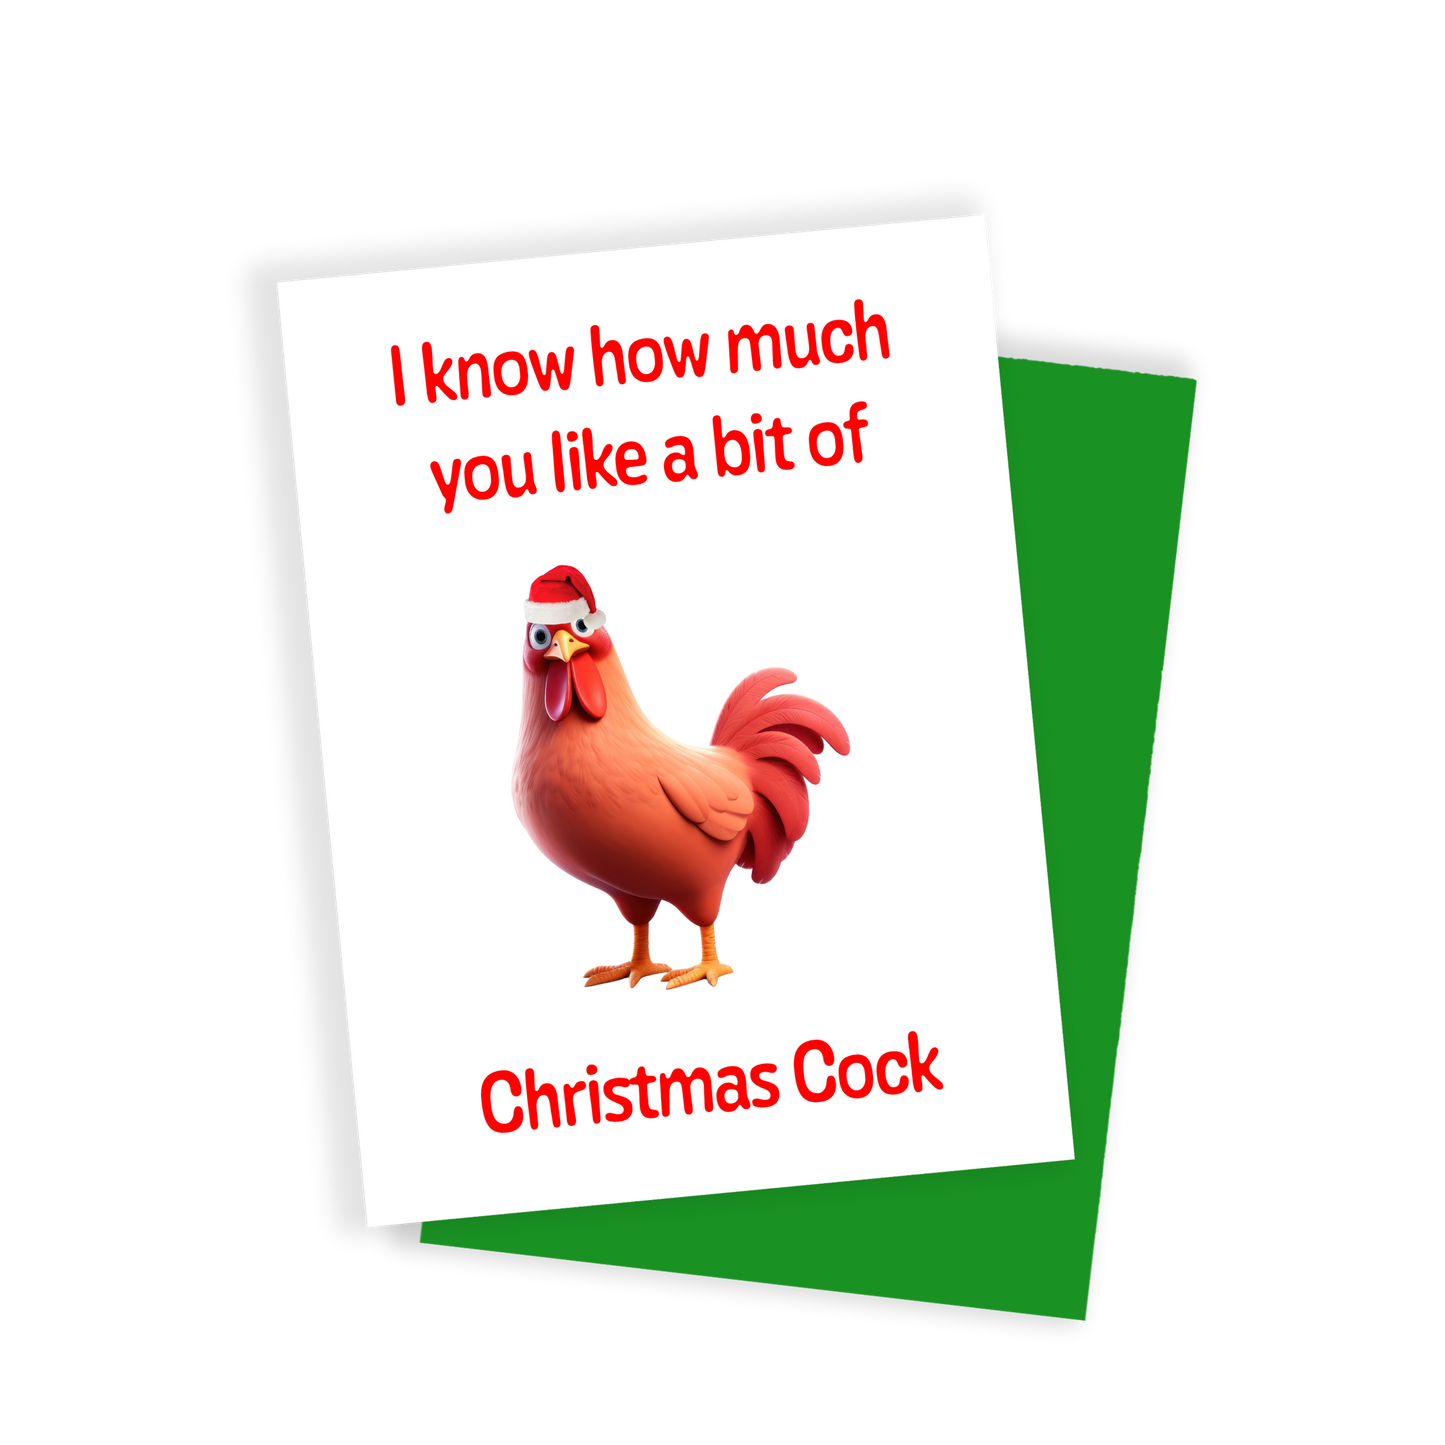 Christmas Cock